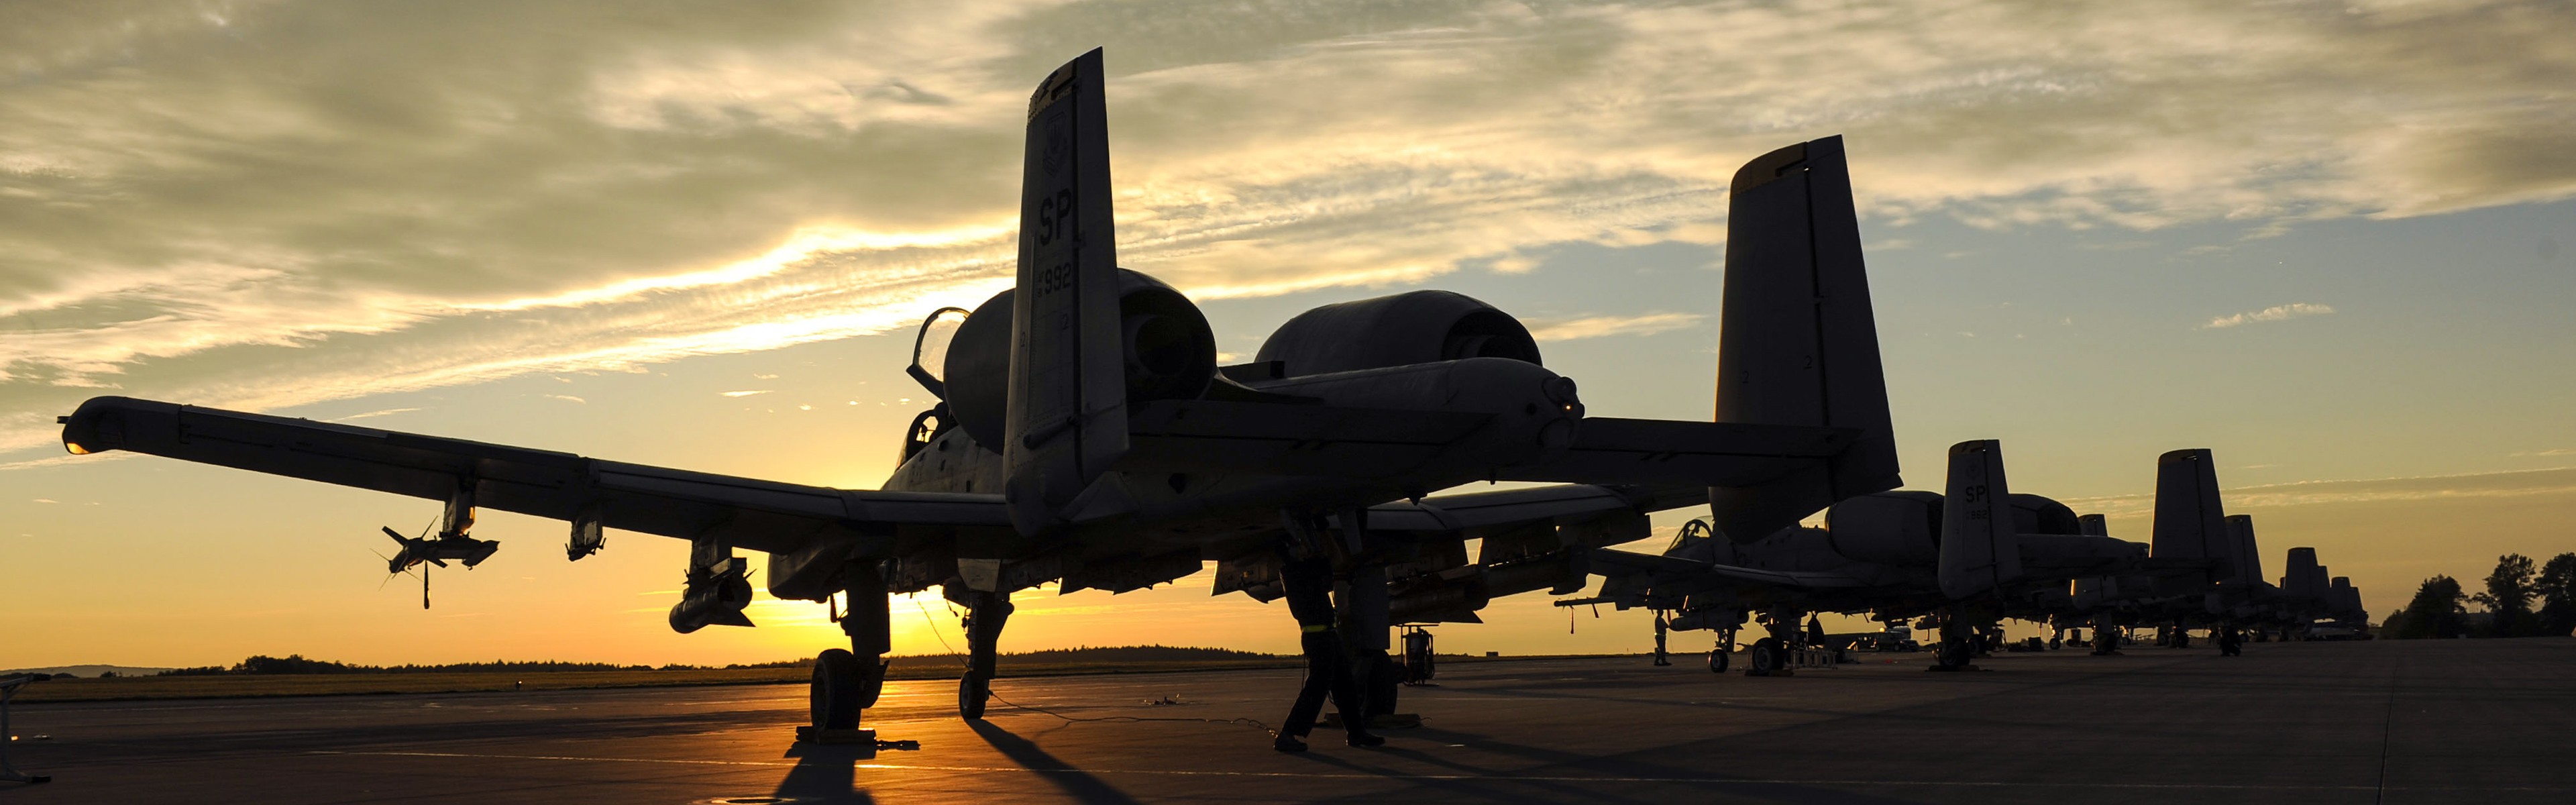 Fairchild A 10 Thunderbolt Ii, Sunset, Military Aircraft, - Dual Monitor Wallpaper A 10 , HD Wallpaper & Backgrounds